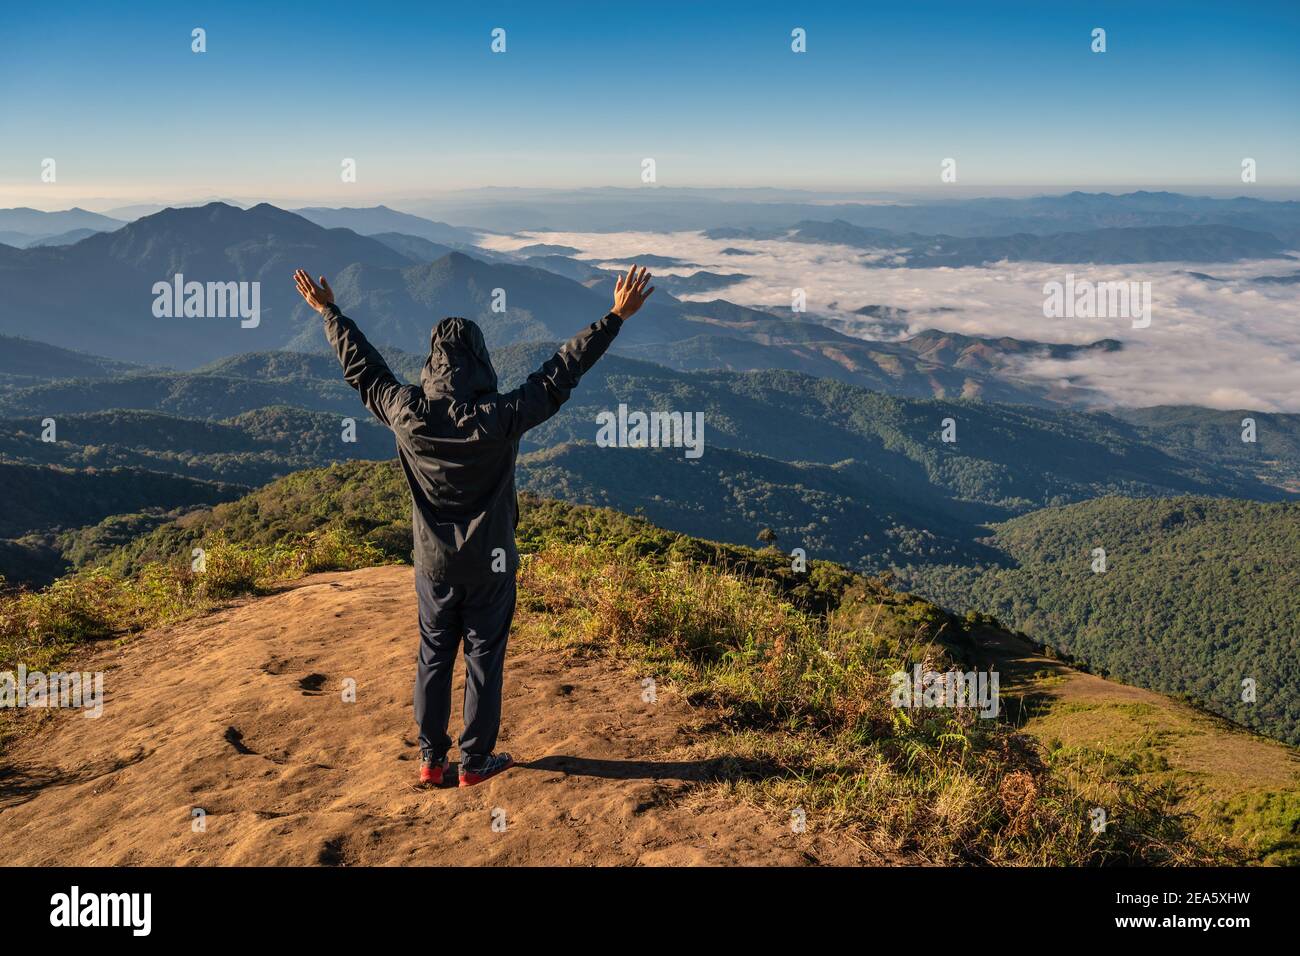 Hombre senderismo levantar mano disfrutar de éxito y mirar la cadena montañosa en la cima de la montaña en el bosque tropical, aventura al aire libre concepto de viaje Foto de stock